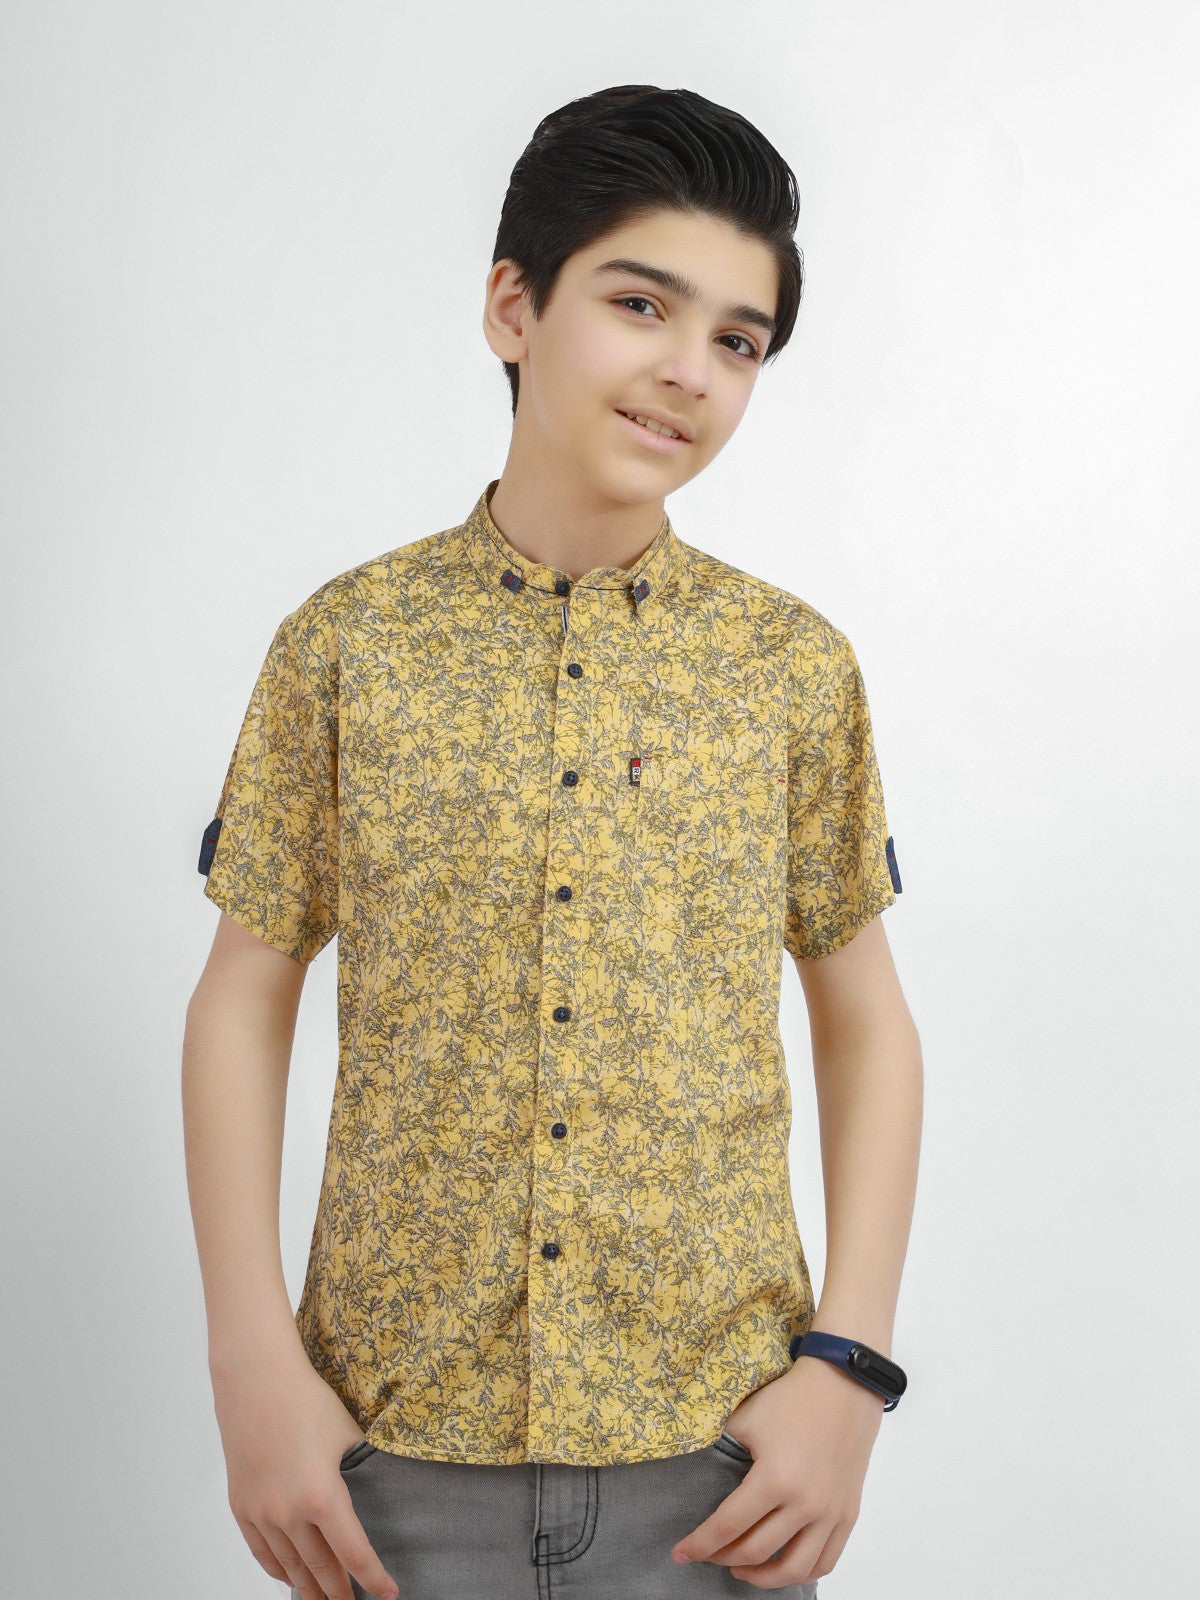 Boy's Light Gold Shirt - EBTS21-27298